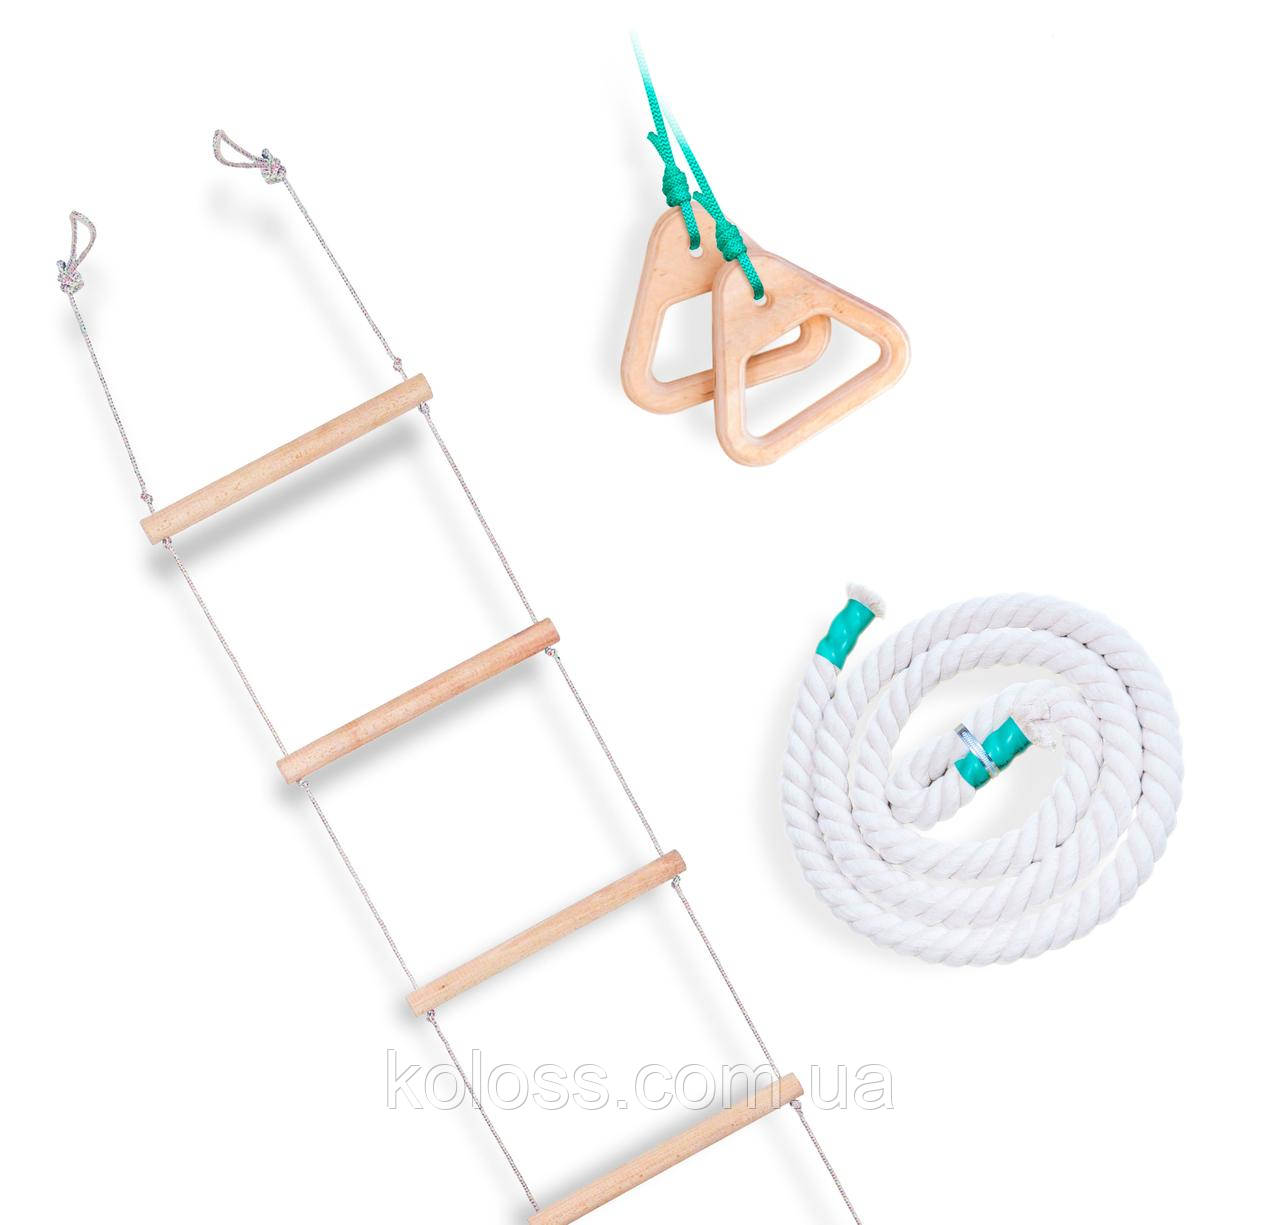 Дитячий навісний набір для шведської стінки (гімнастичні кільця, канат, мотузкові сходи)